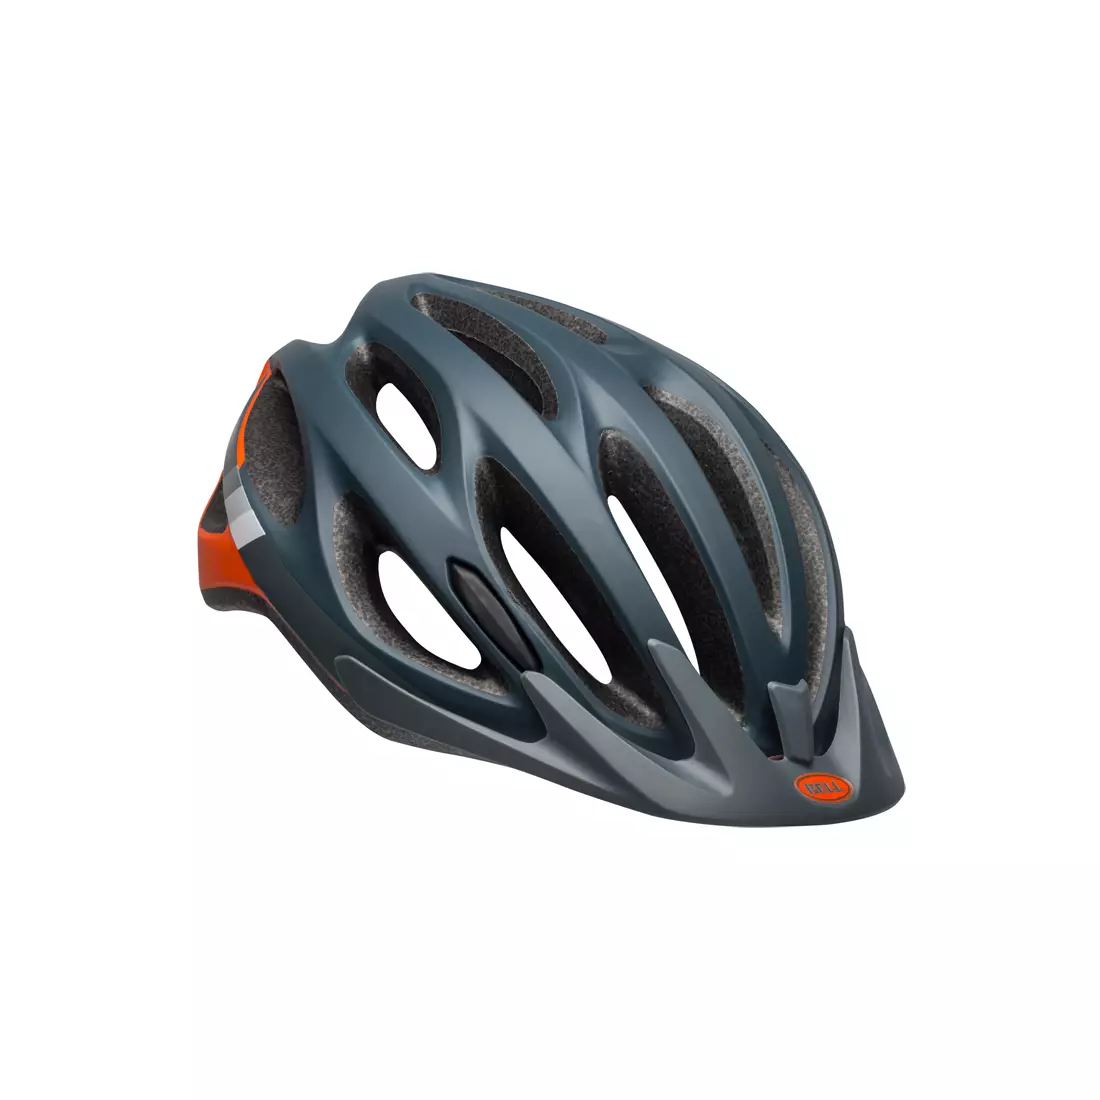 BELL TRAVERSE speed matte slate gray orange mtb bicycle helmet